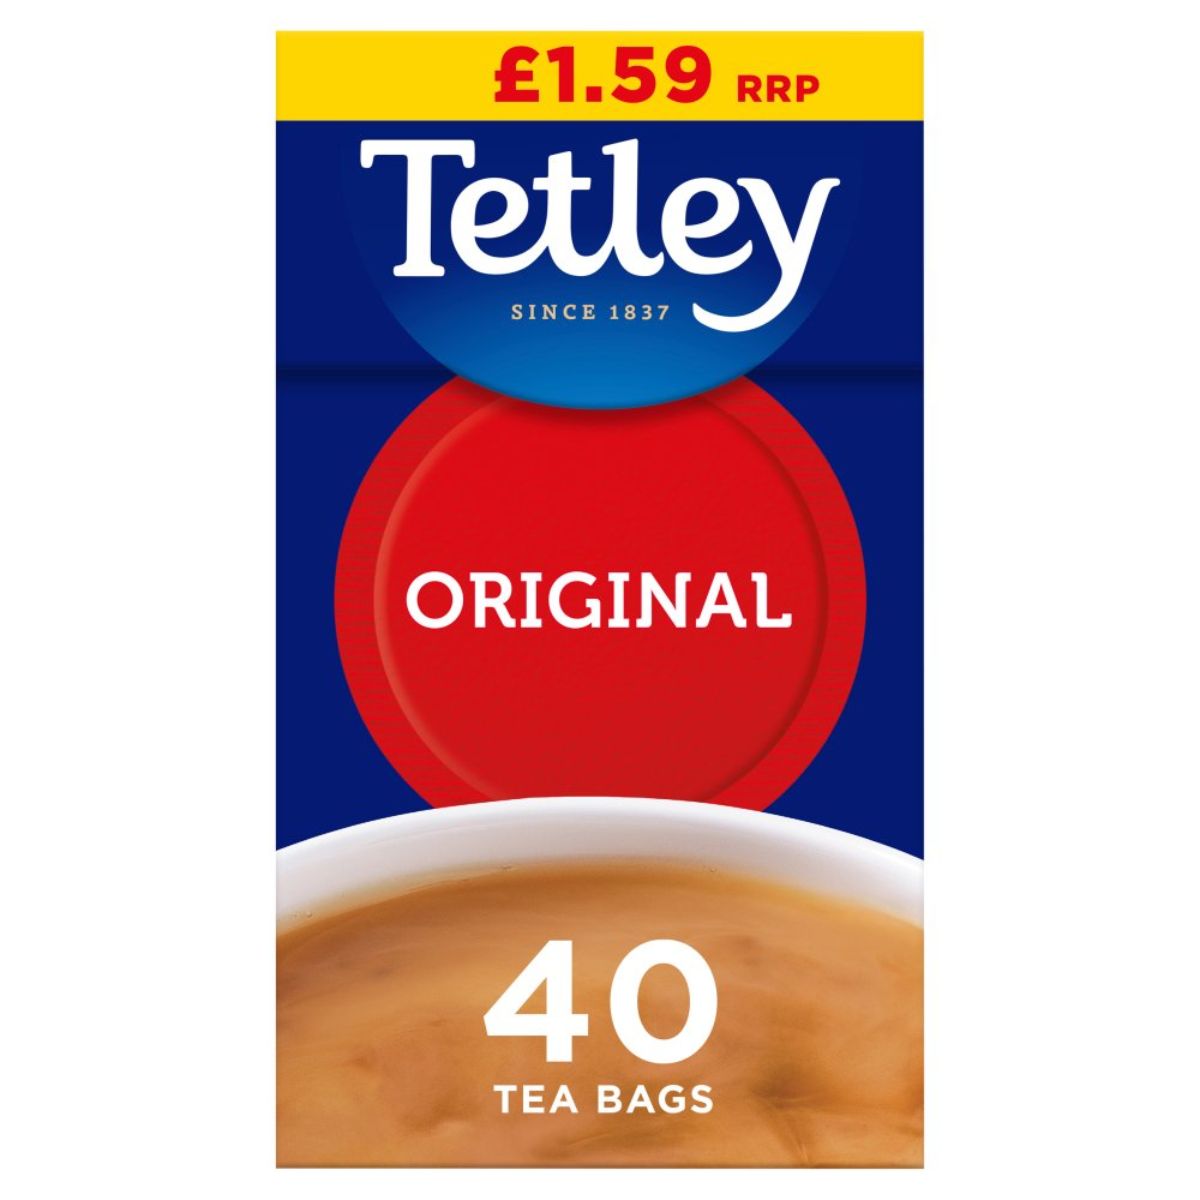 Tetley - Original 40 Tea Bags - 125g.